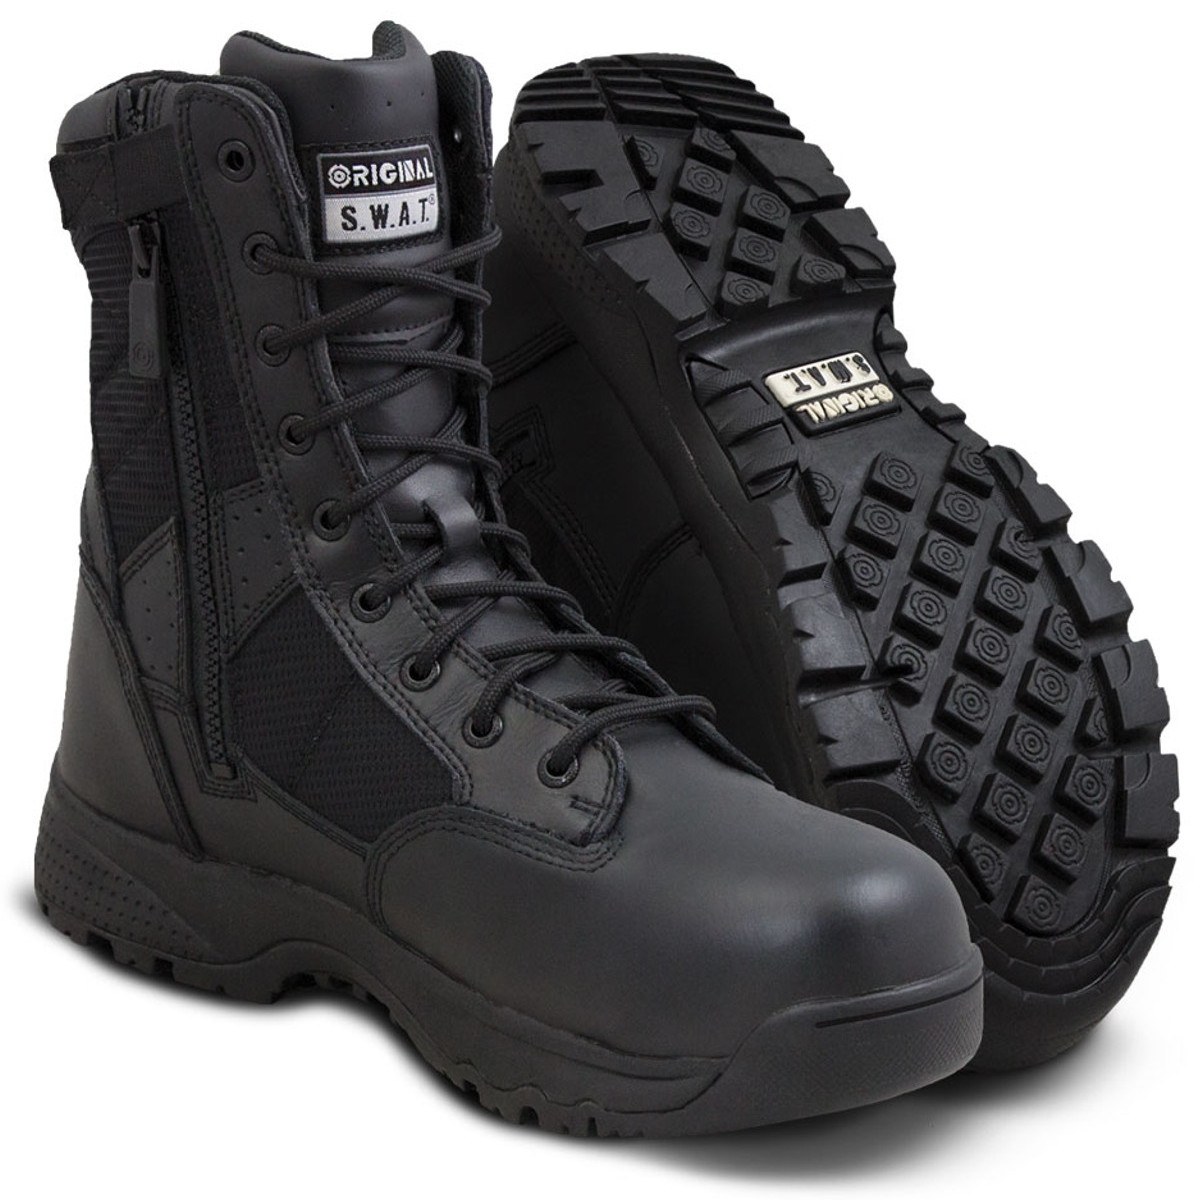 Ботинки мембранные Original Swat Metro 9" WP Safety Side-Zip 129101 Black